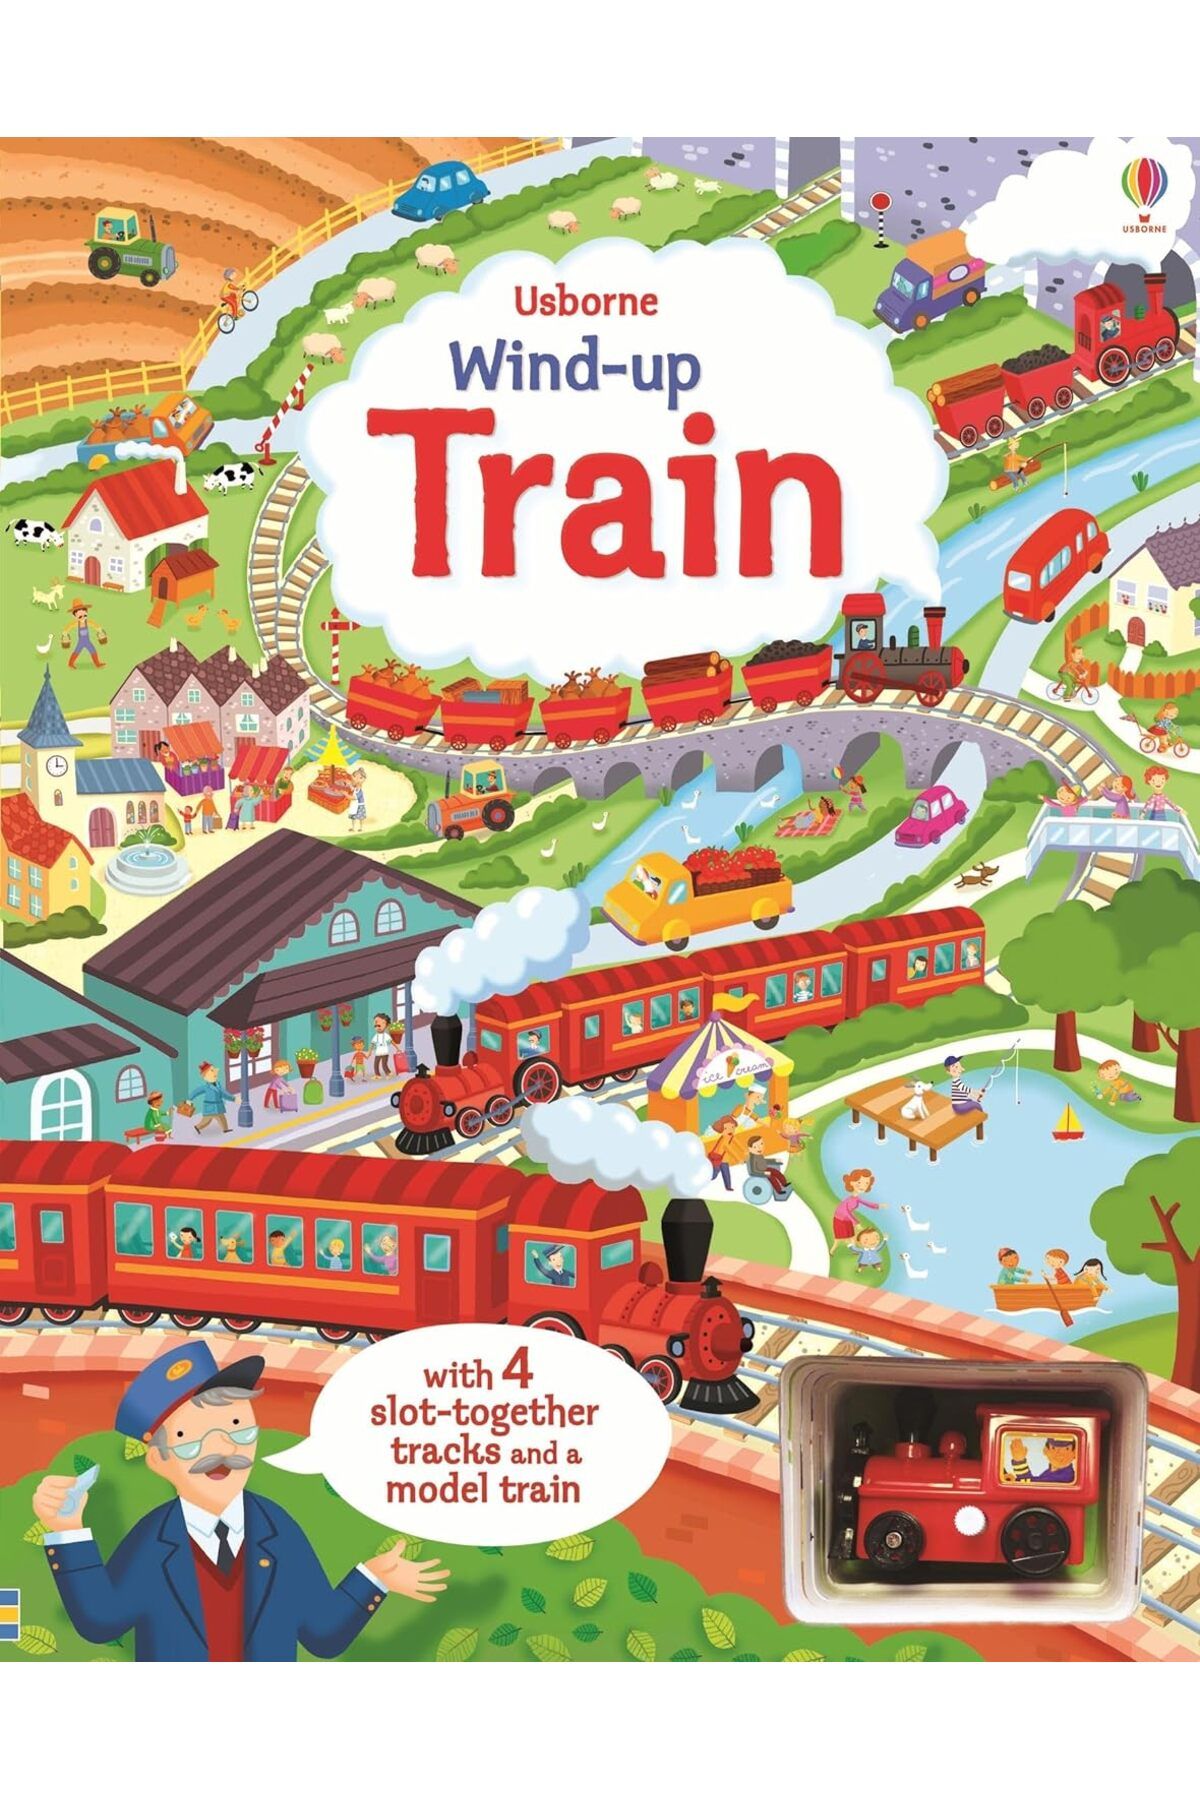 Usborne Wind-up Train Book (HAREKETLİ KİTAP)